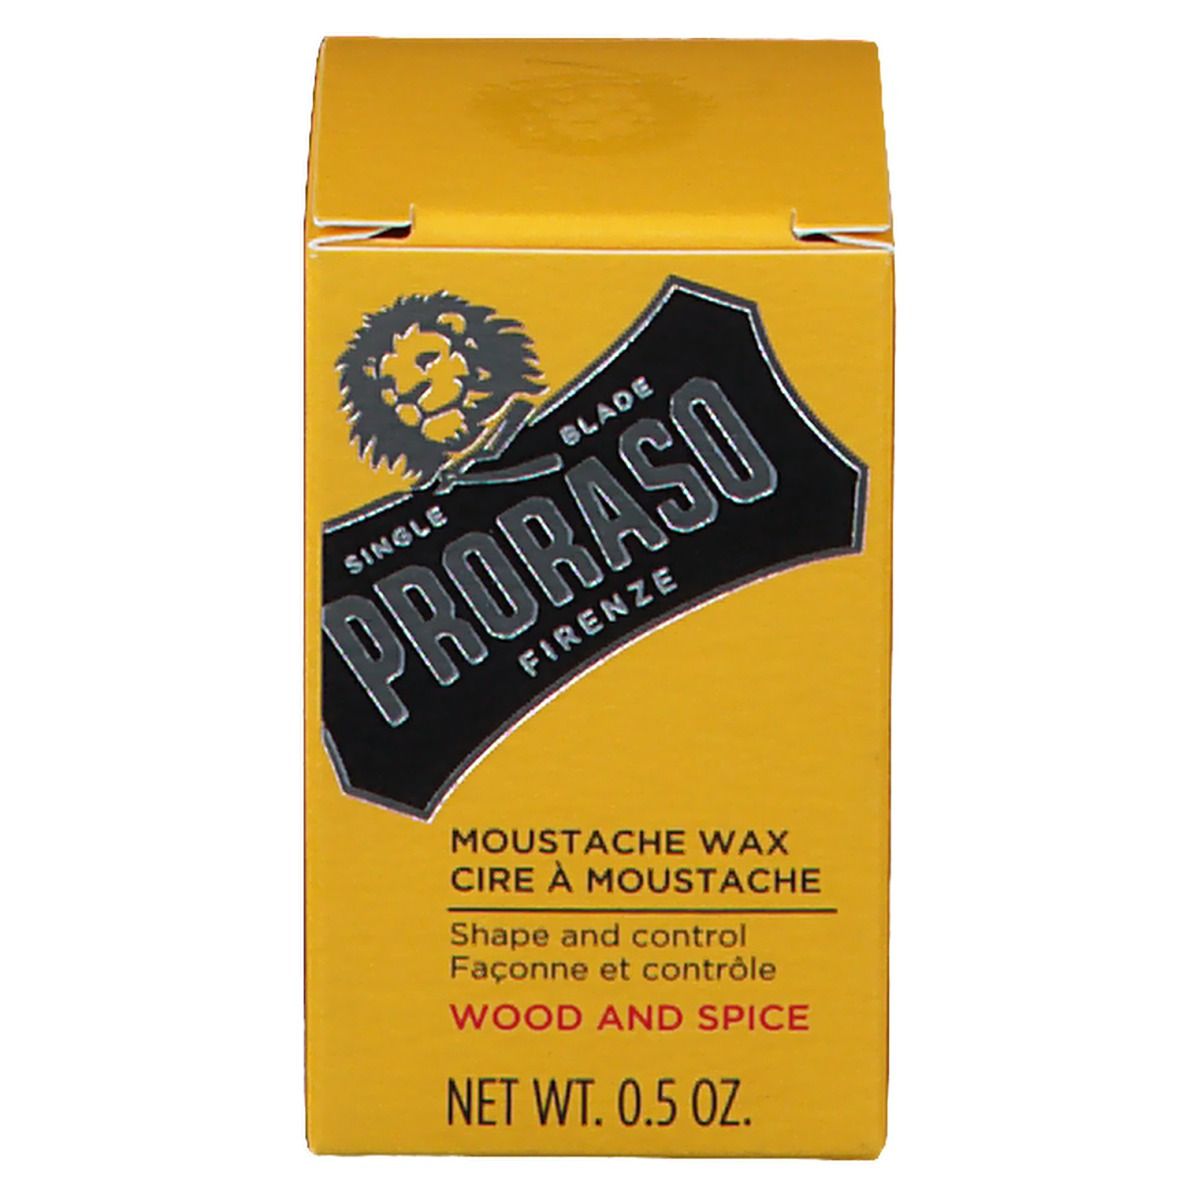 Proraso Wood & Spice Cire Moustache